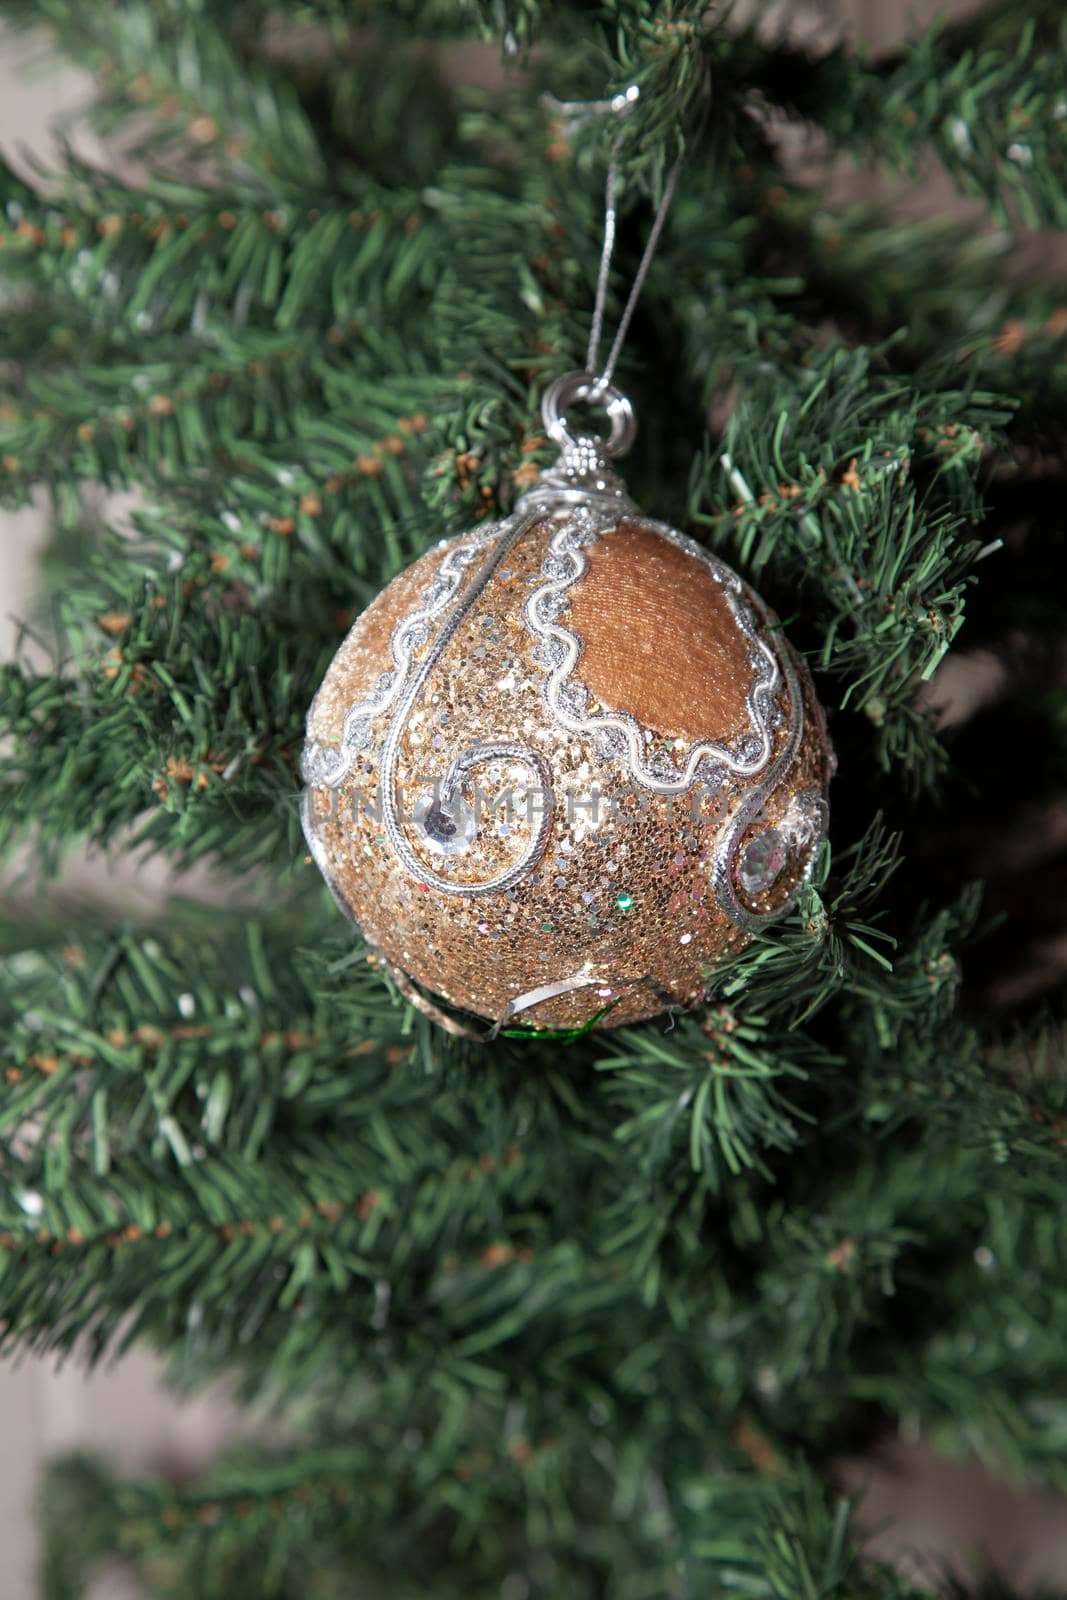 Ornament on a Christmas Tree by tornado98